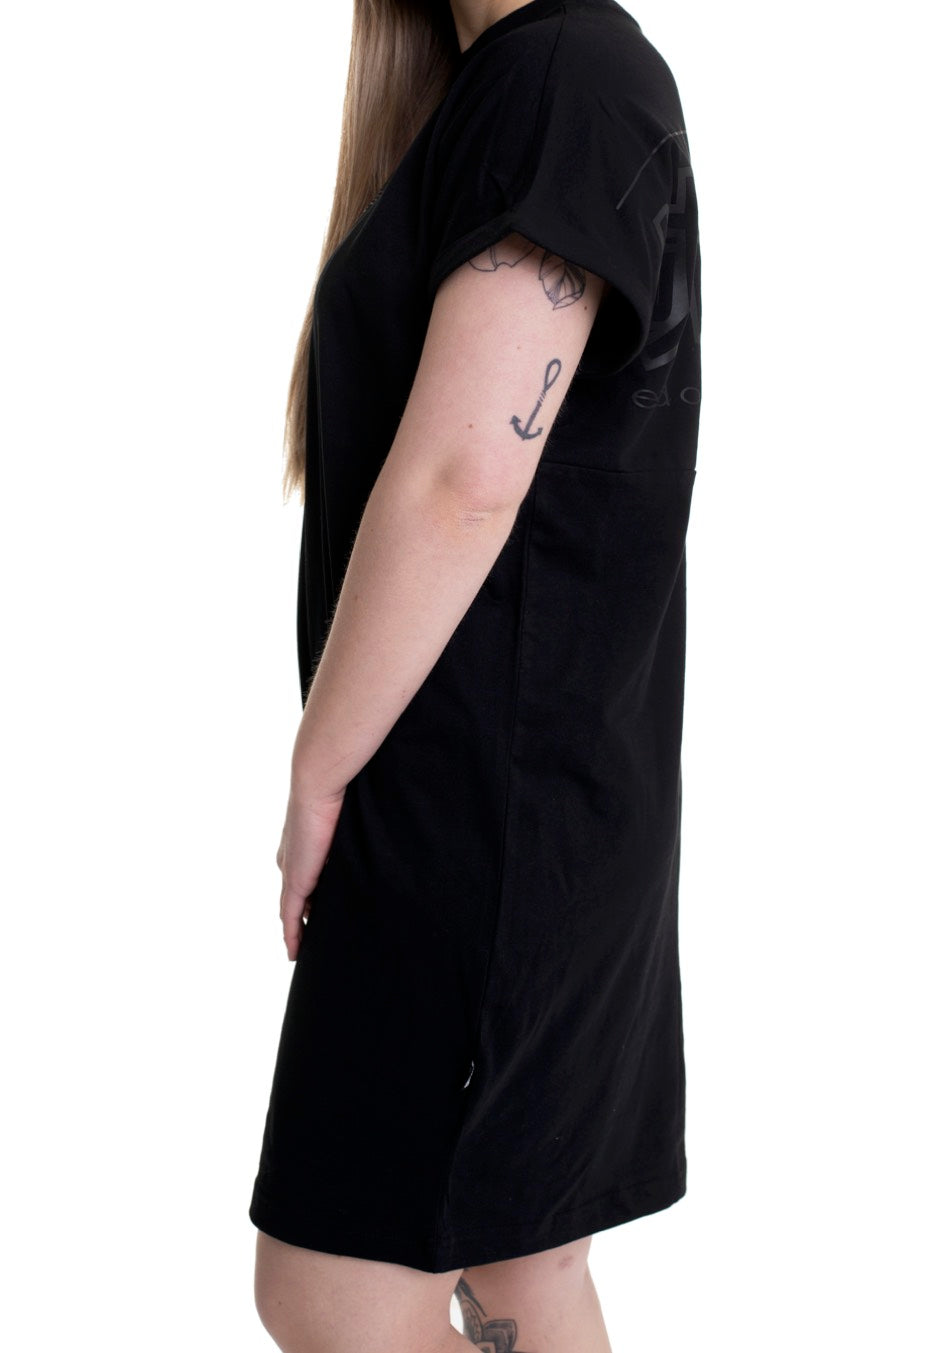 Urban Classics - Ladies Cut On Sleeve Printed Tee Black/Black - Dress